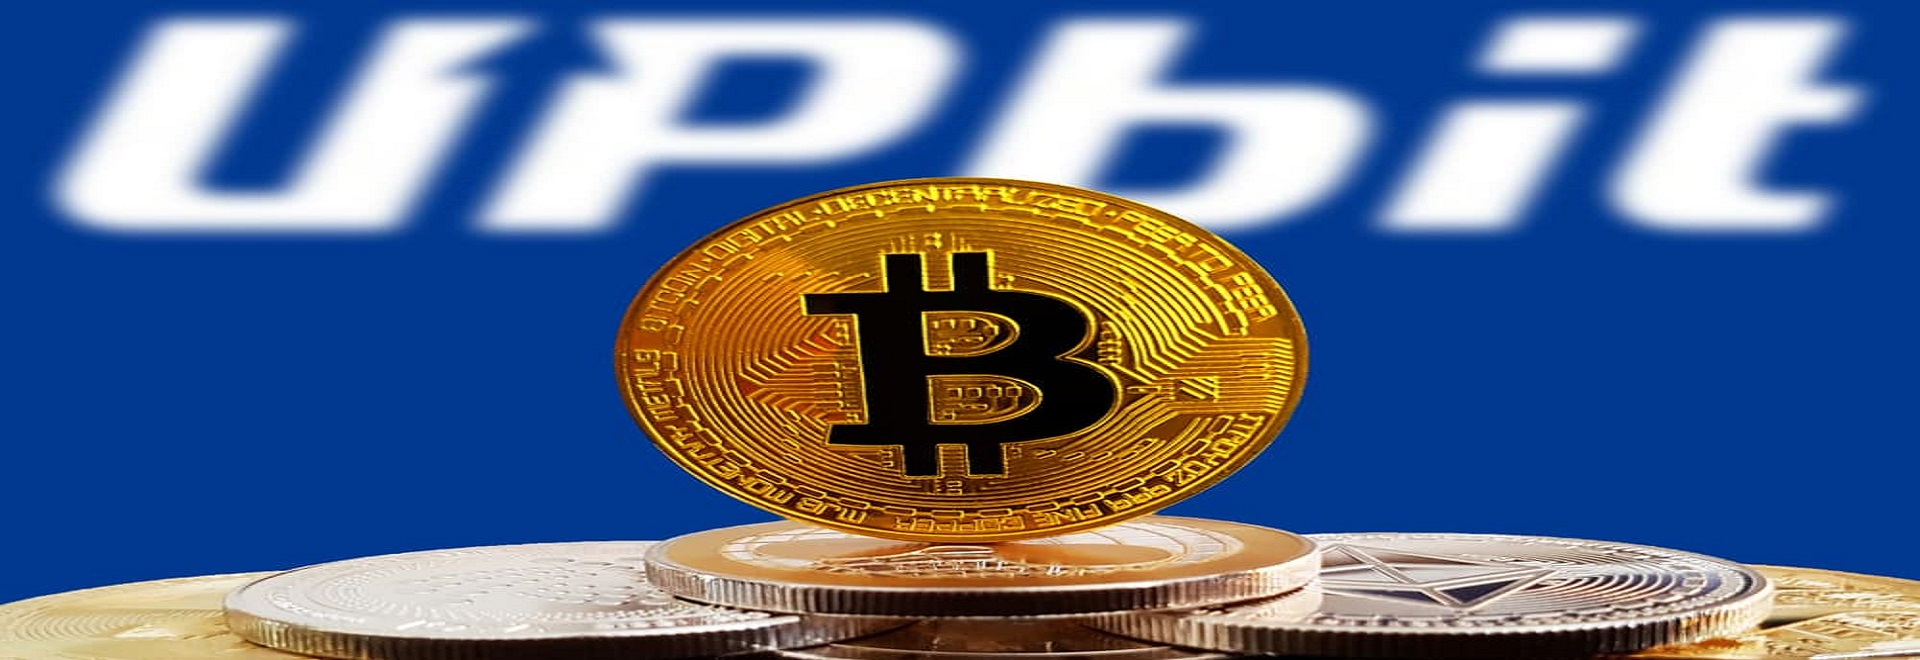 upbit cryptocurrency exchange bitcoin - اخبار شنبه مورخ 98/7/6